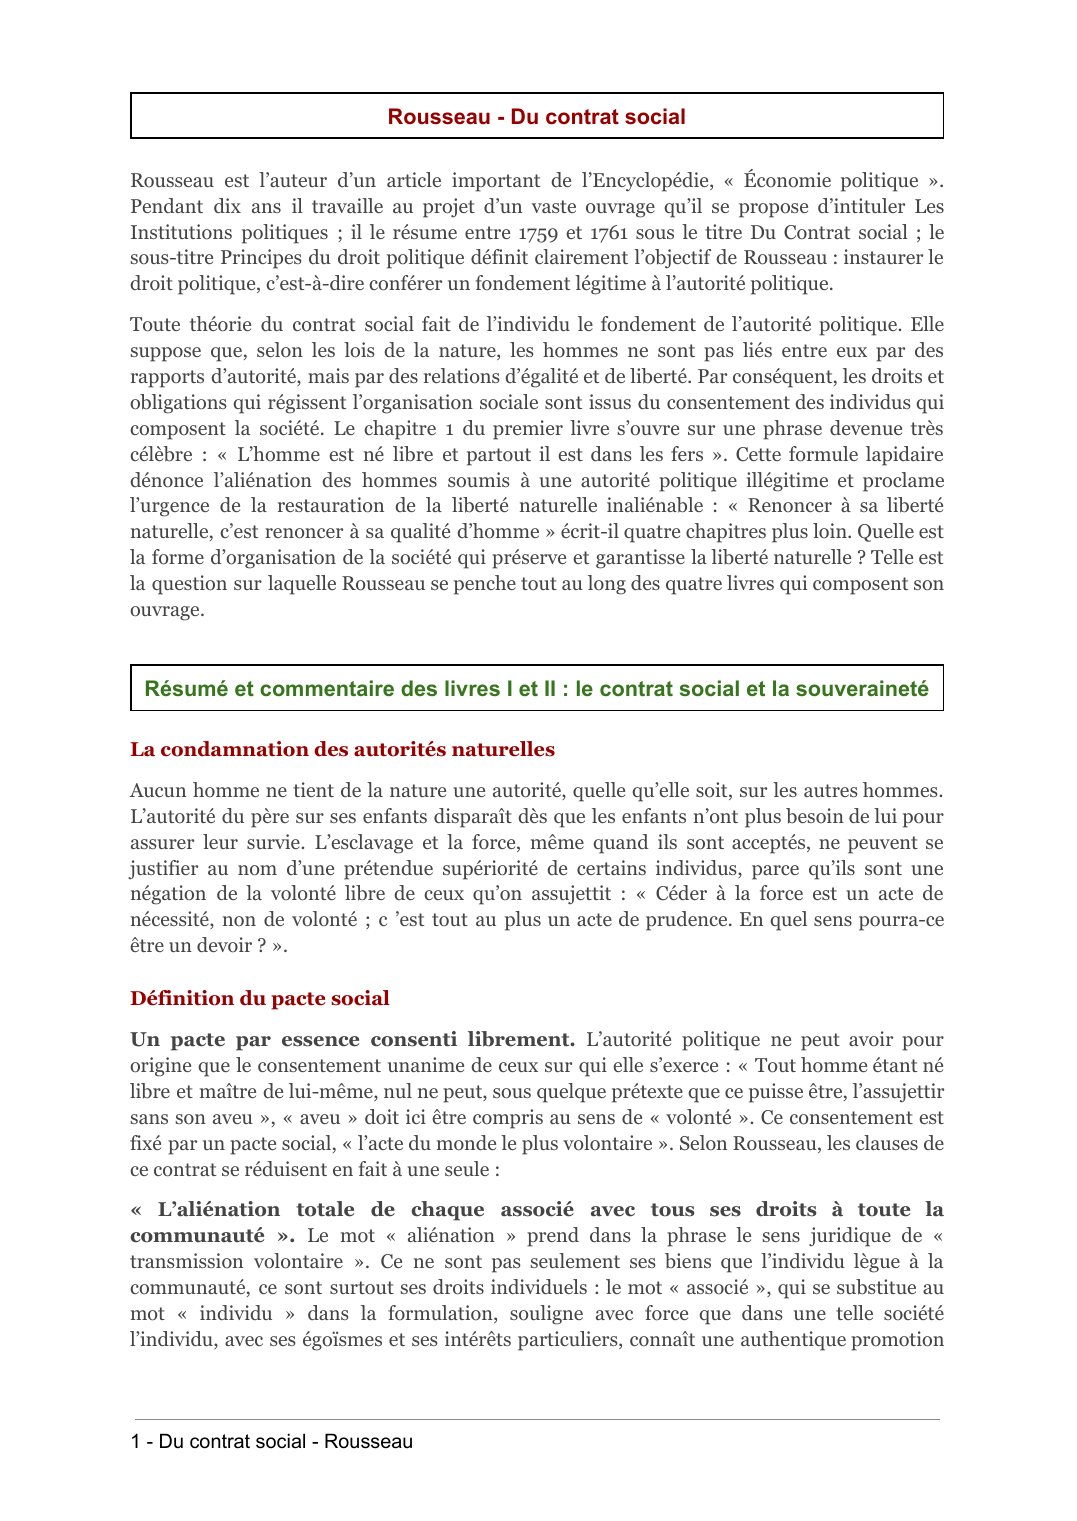 Prévisualisation du document Rousseau - Résumé et commentaire des livres I et II : le contrat social et la souveraineté